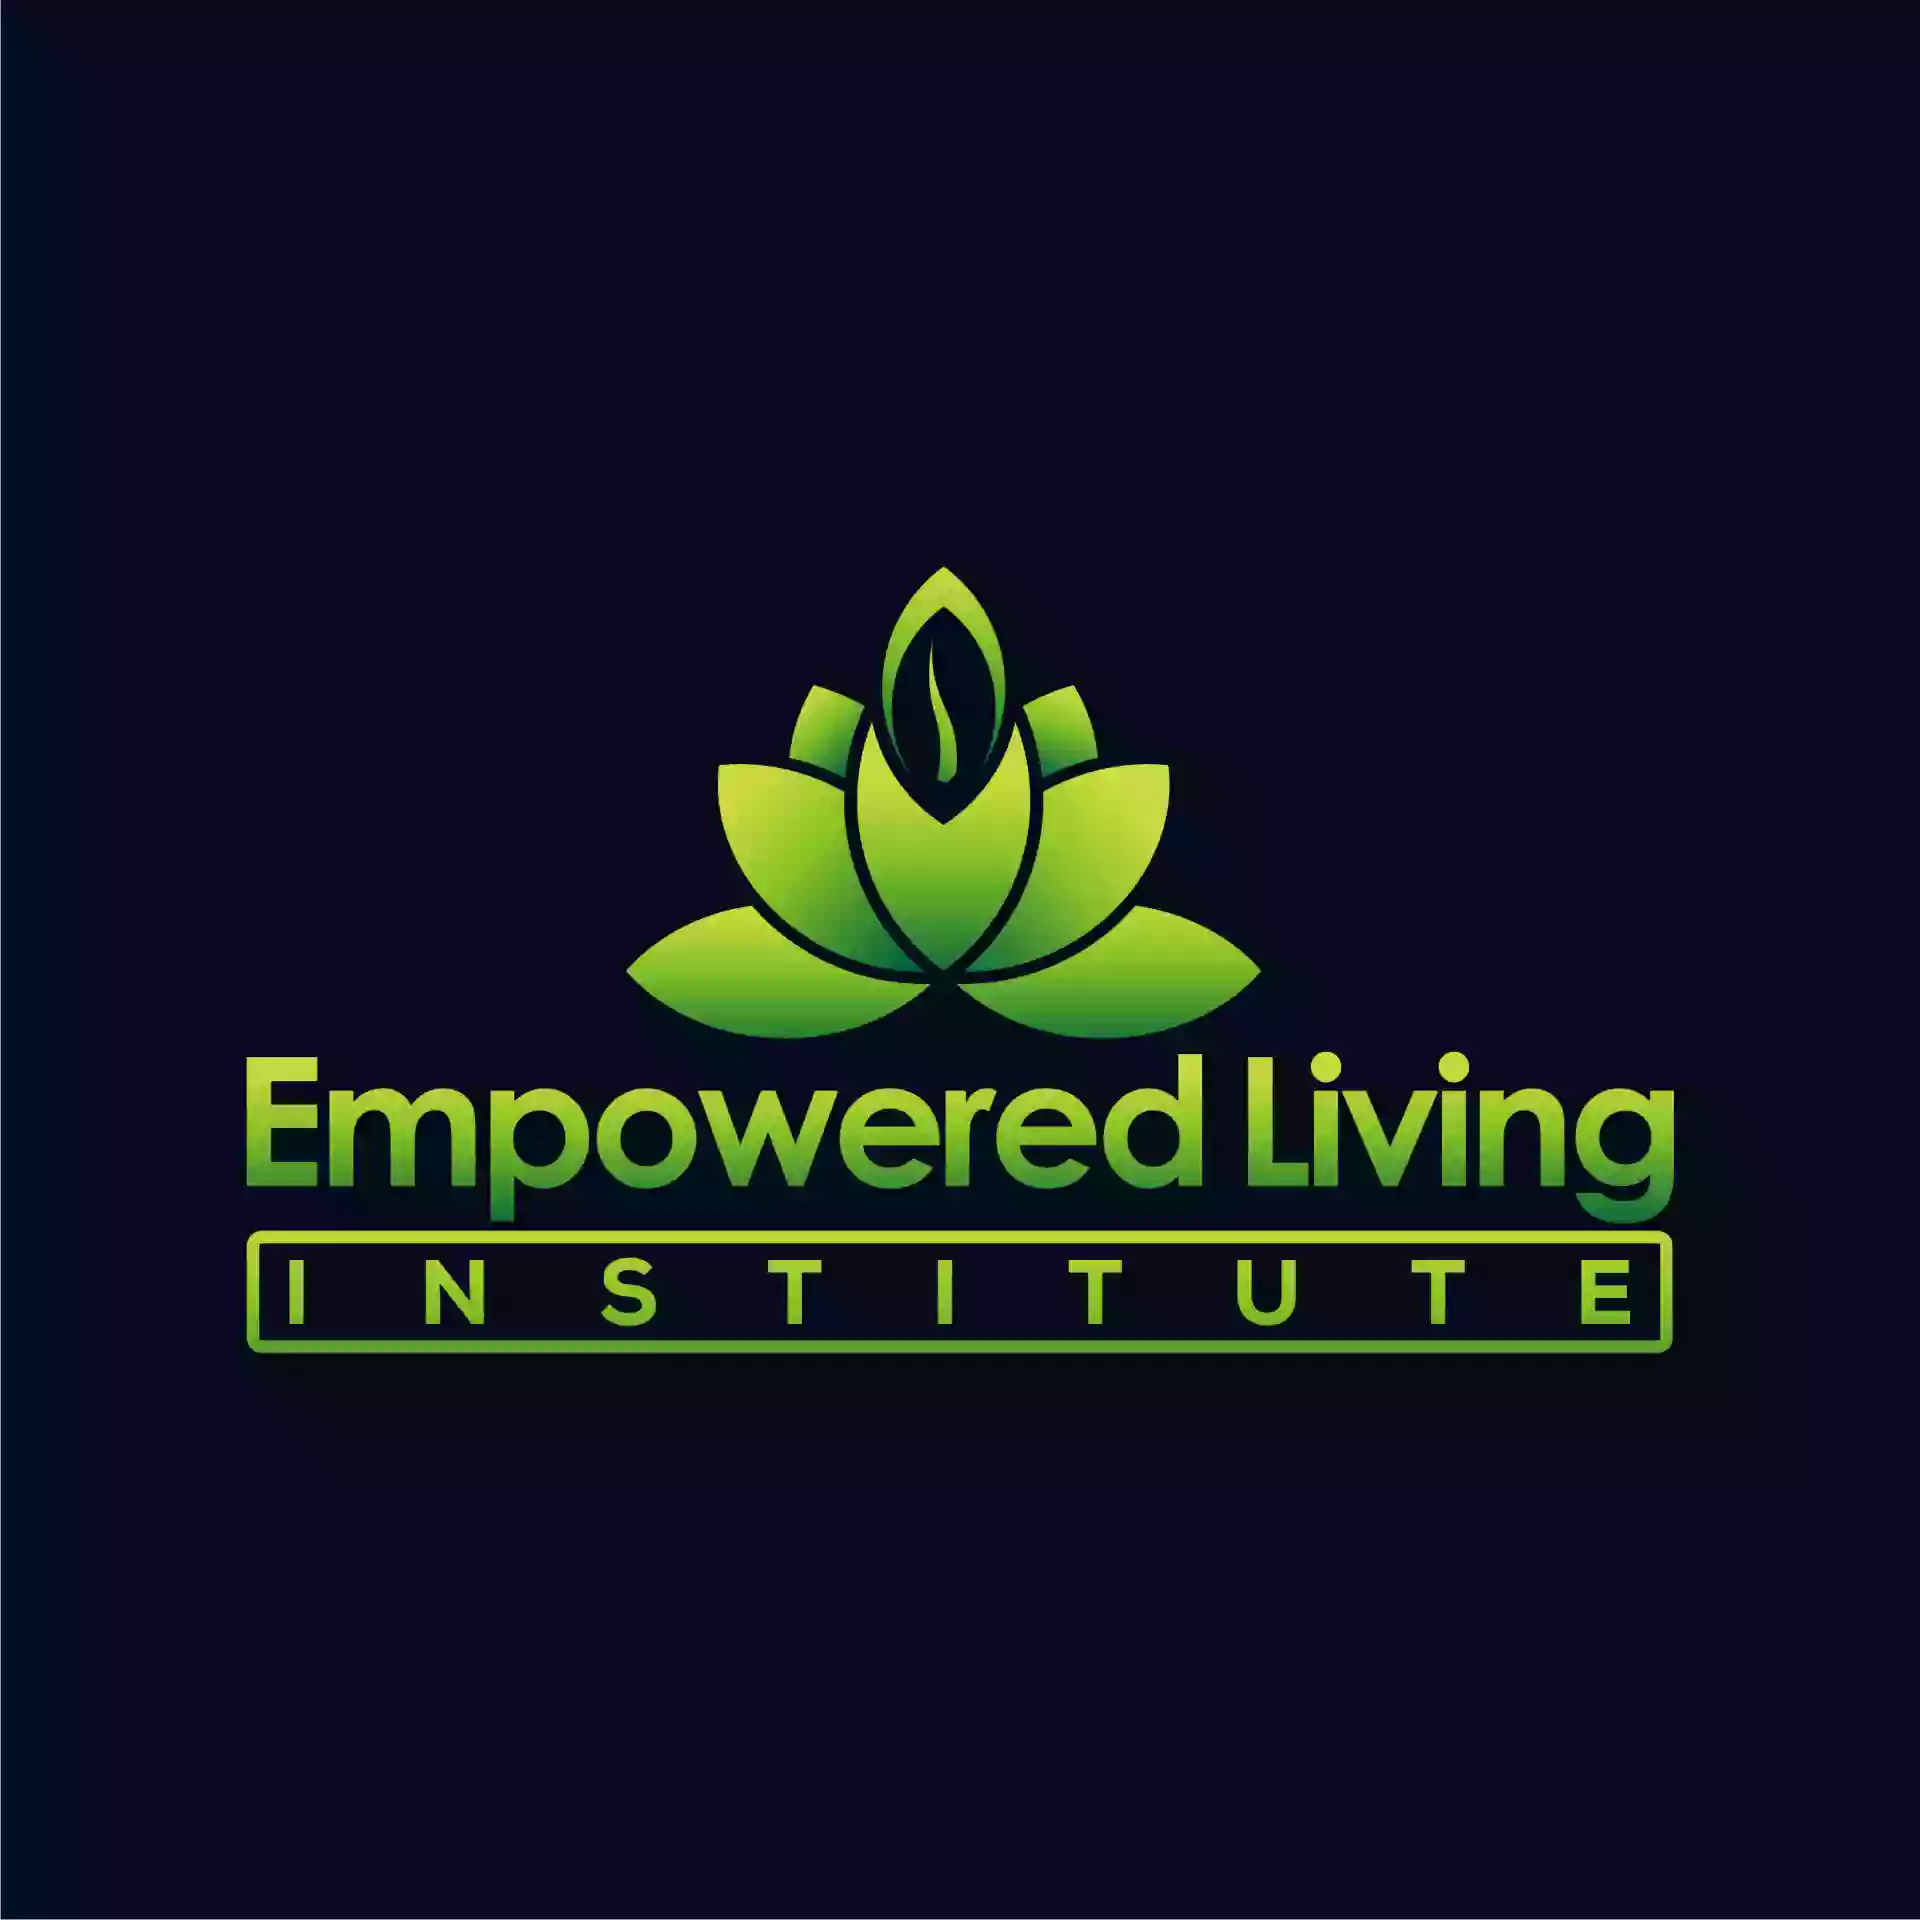 Empowered Living Institute, LLC